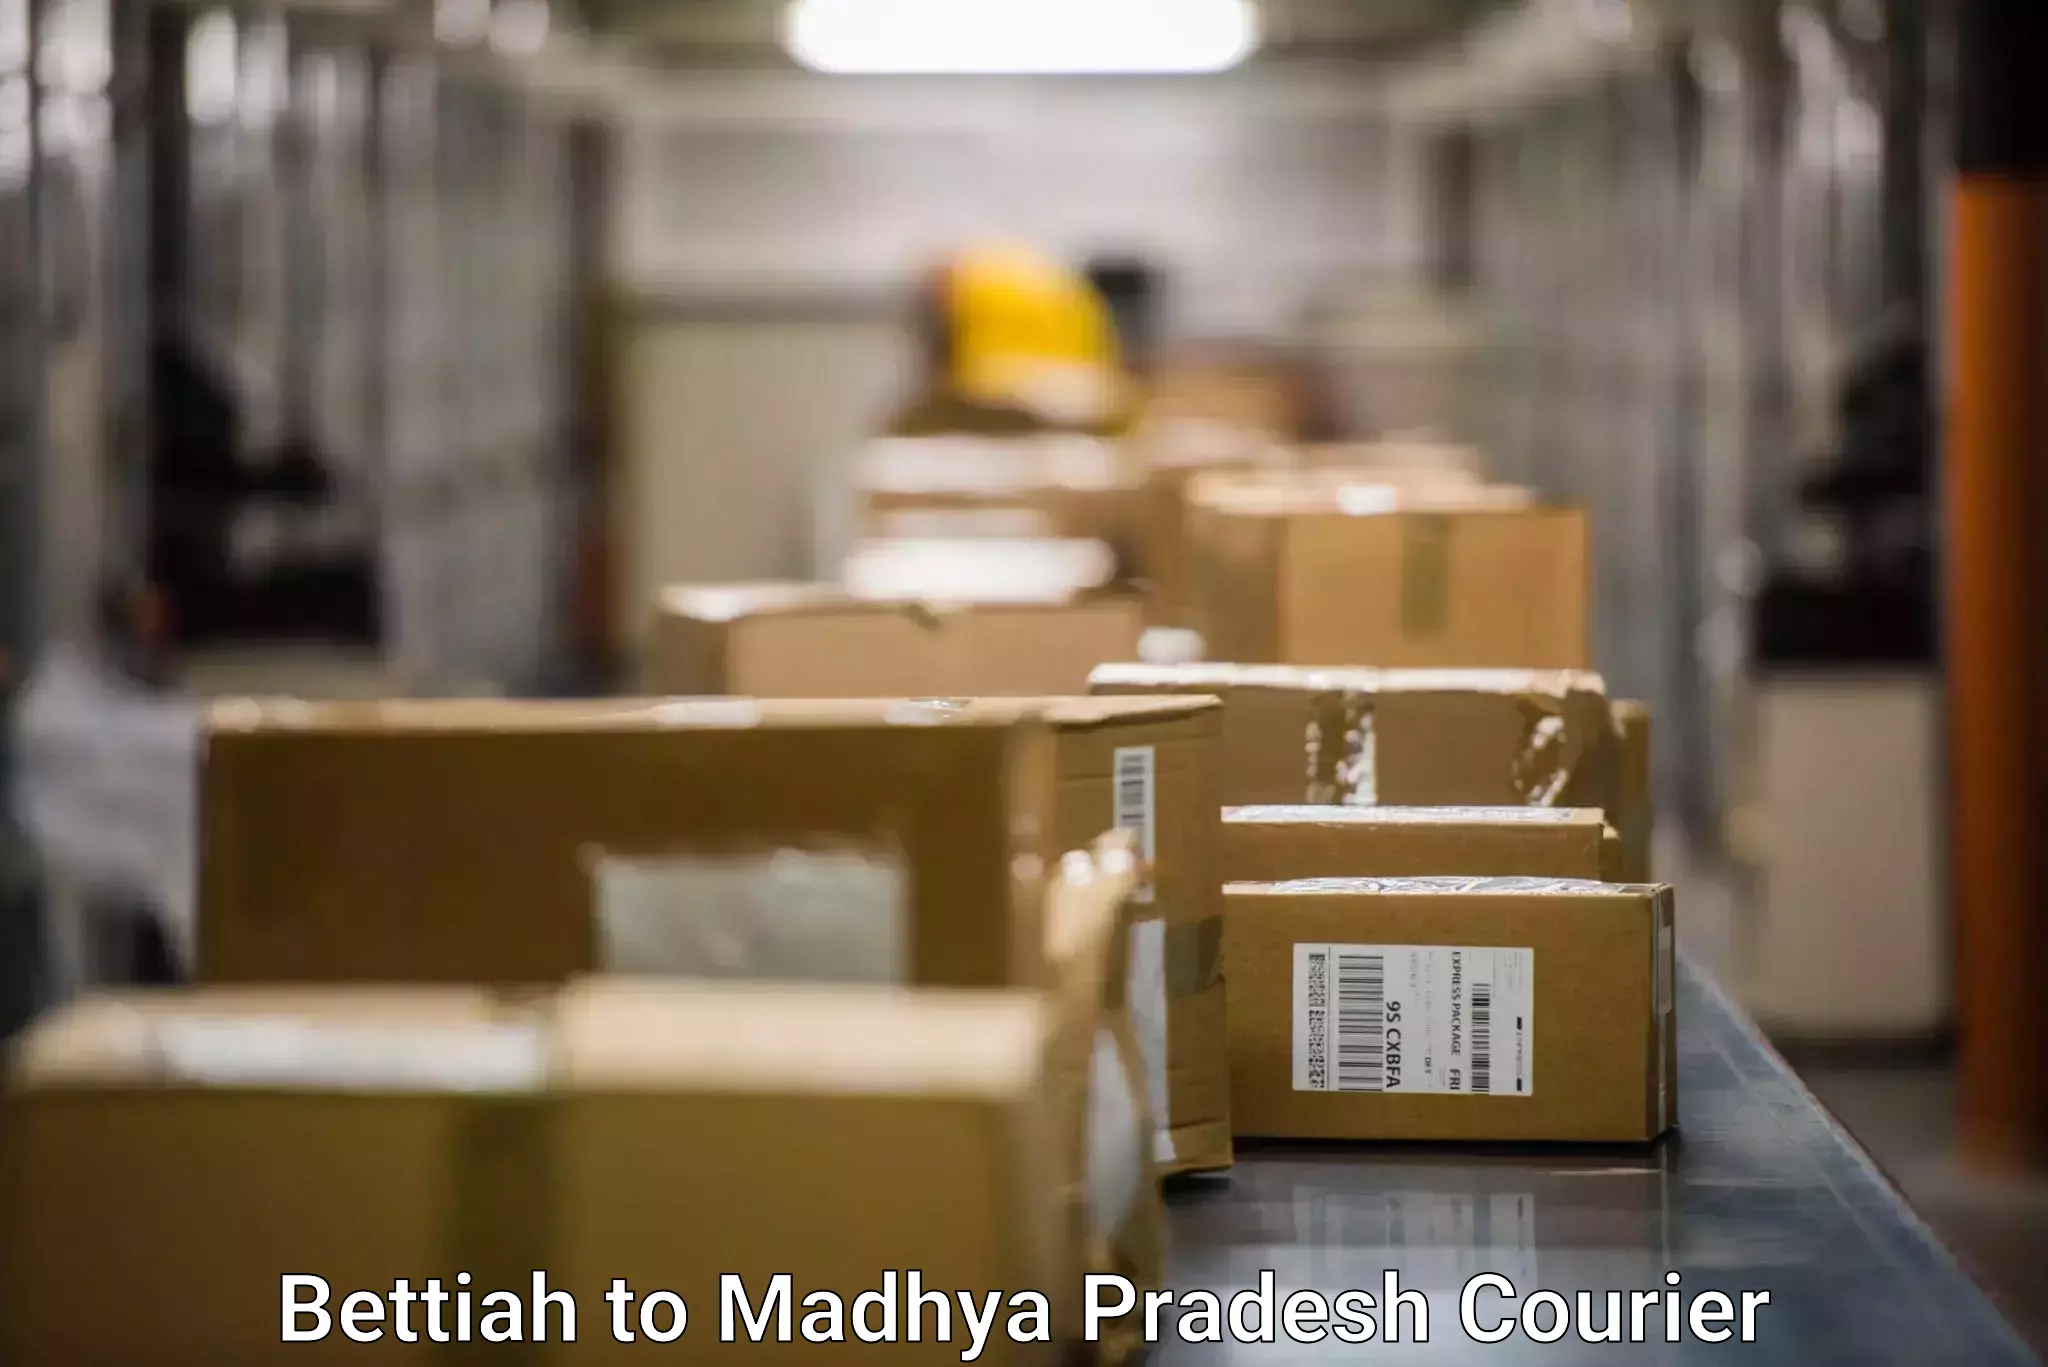 Door-to-door shipment in Bettiah to Deosar